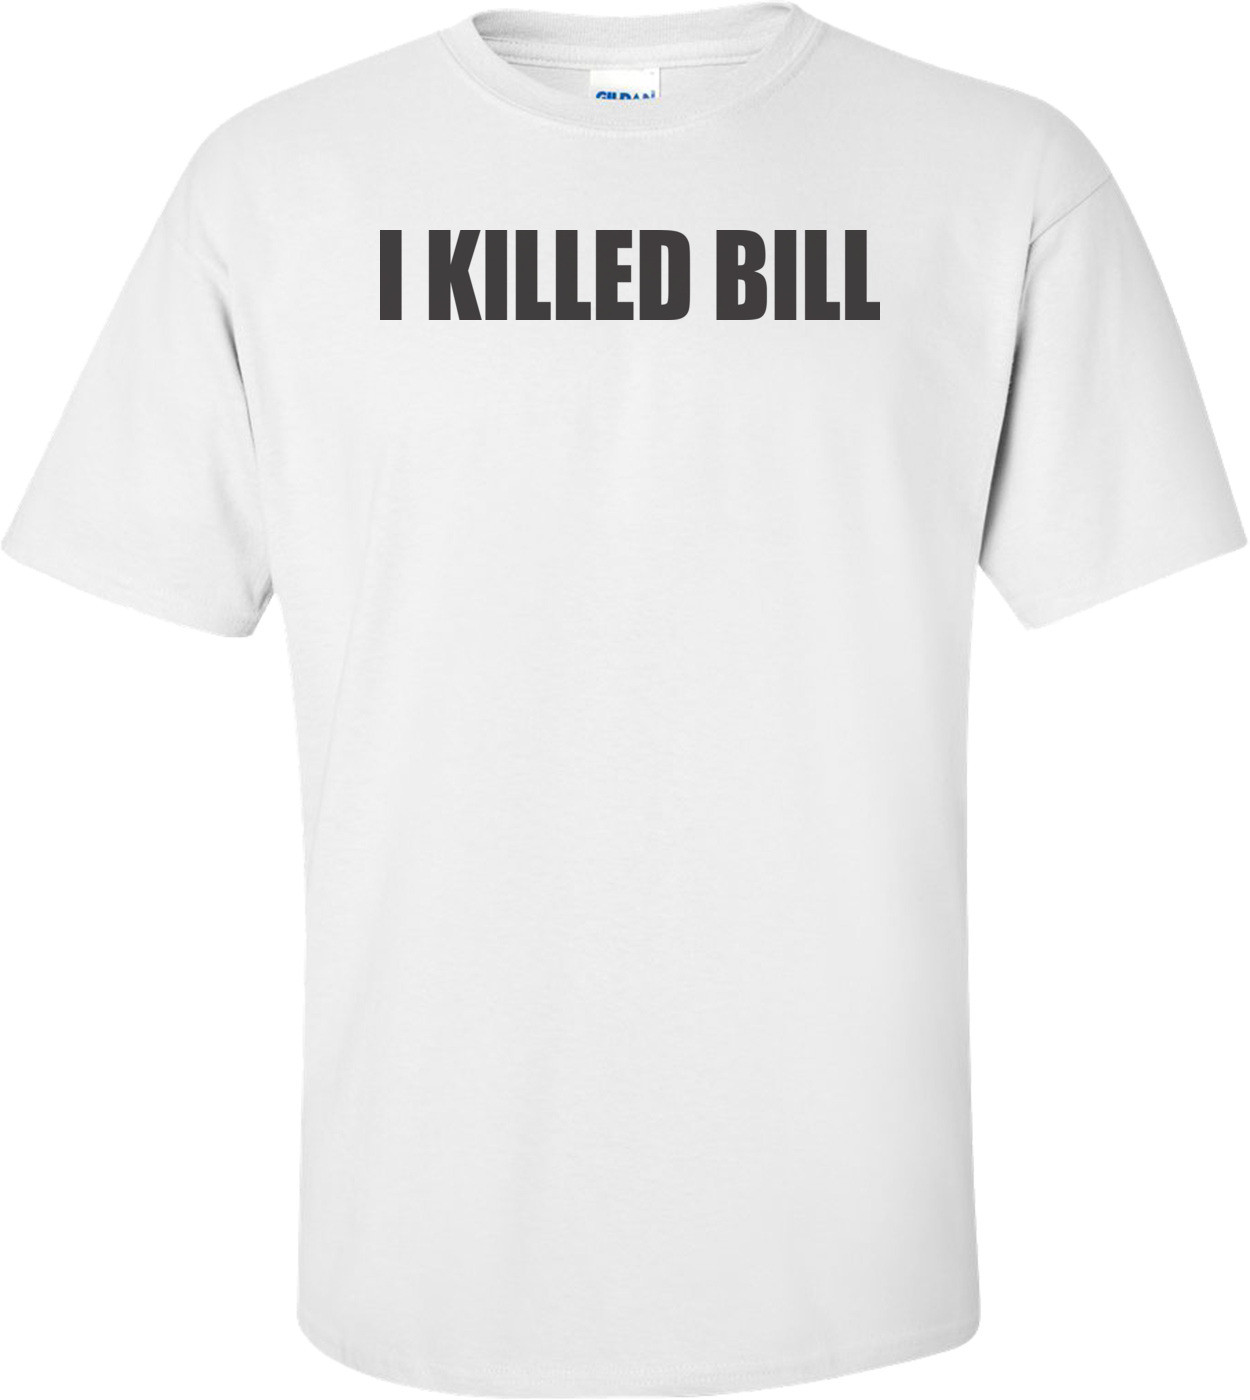 I Killed Bill T-shirt